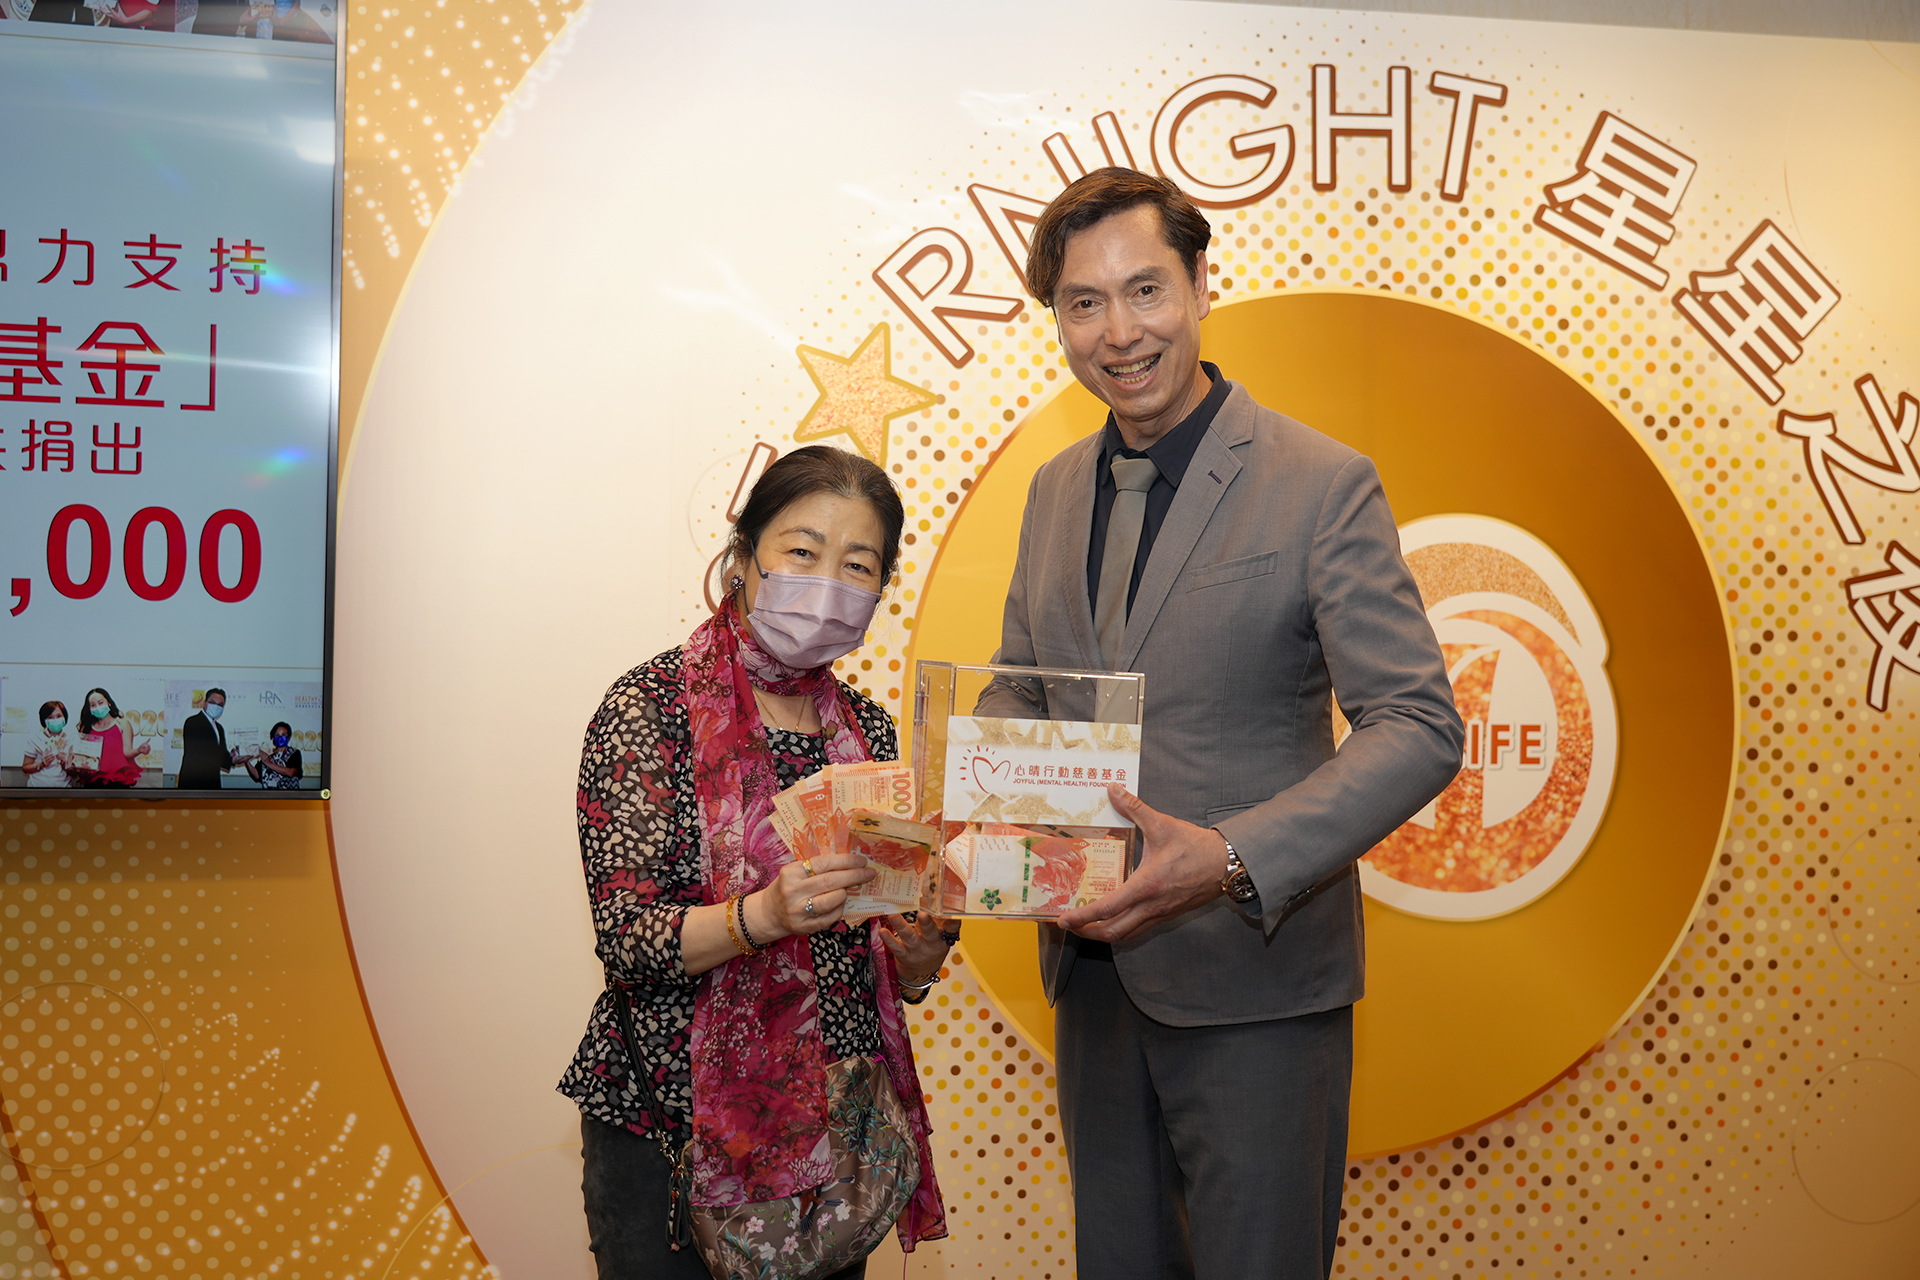 恭賀朱壁賢女士從星級百萬富翁遊戲贏取HK$10,000獎金並與公司合共捐助HK$8000予「心晴行動慈善基金」